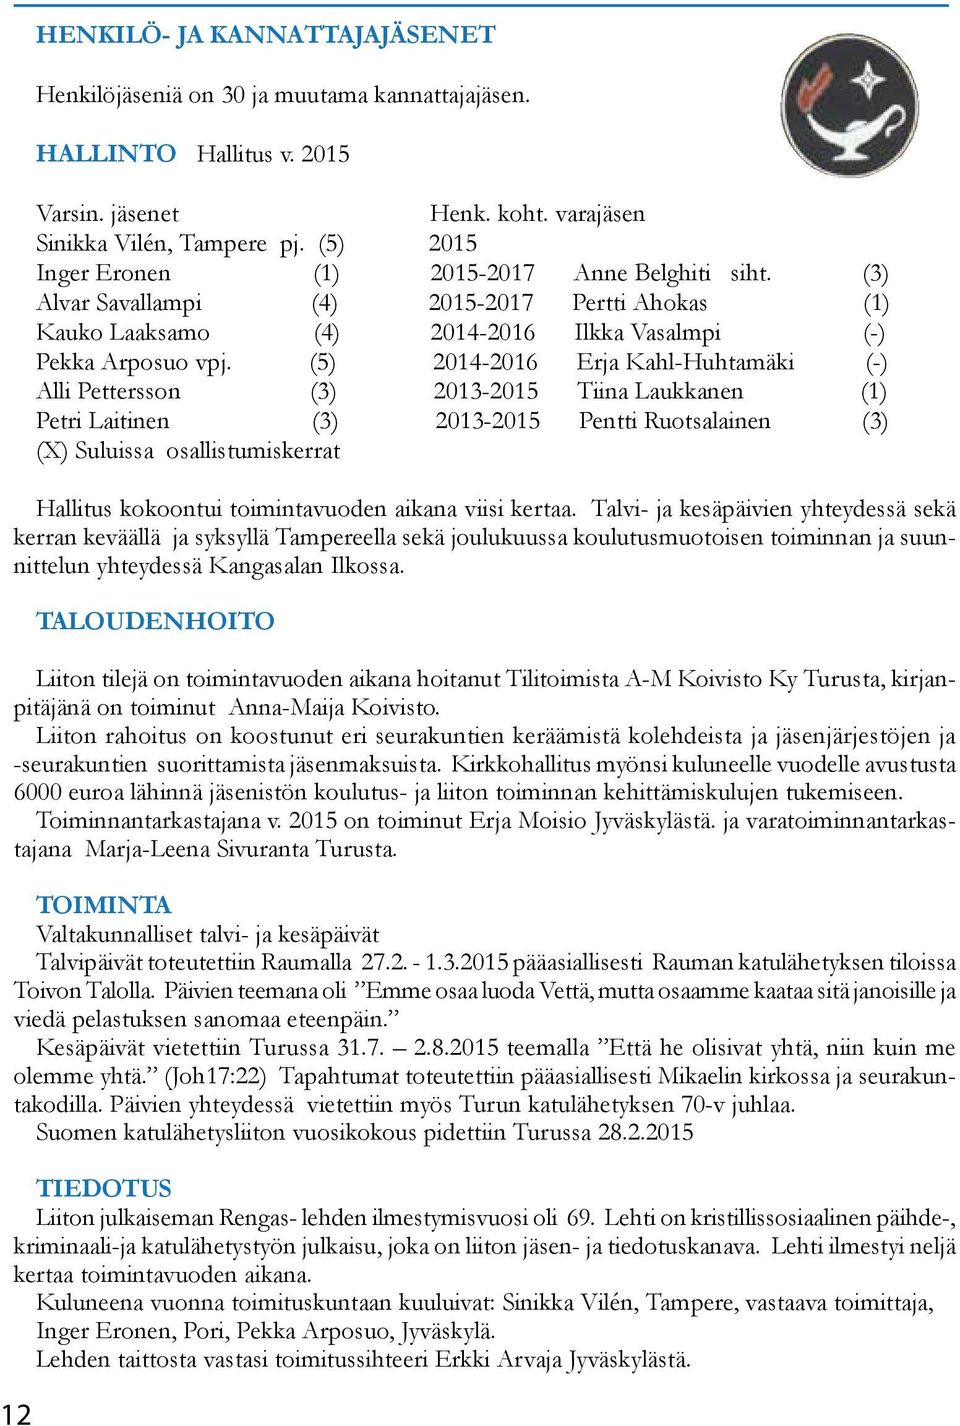 (5) 2014-2016 Erja Kahl-Huhtamäki (-) Alli Pettersson (3) 2013-2015 Tiina Laukkanen (1) Petri Laitinen (3) 2013-2015 Pentti Ruotsalainen (3) (X) Suluissa osallistumiskerrat Hallitus kokoontui